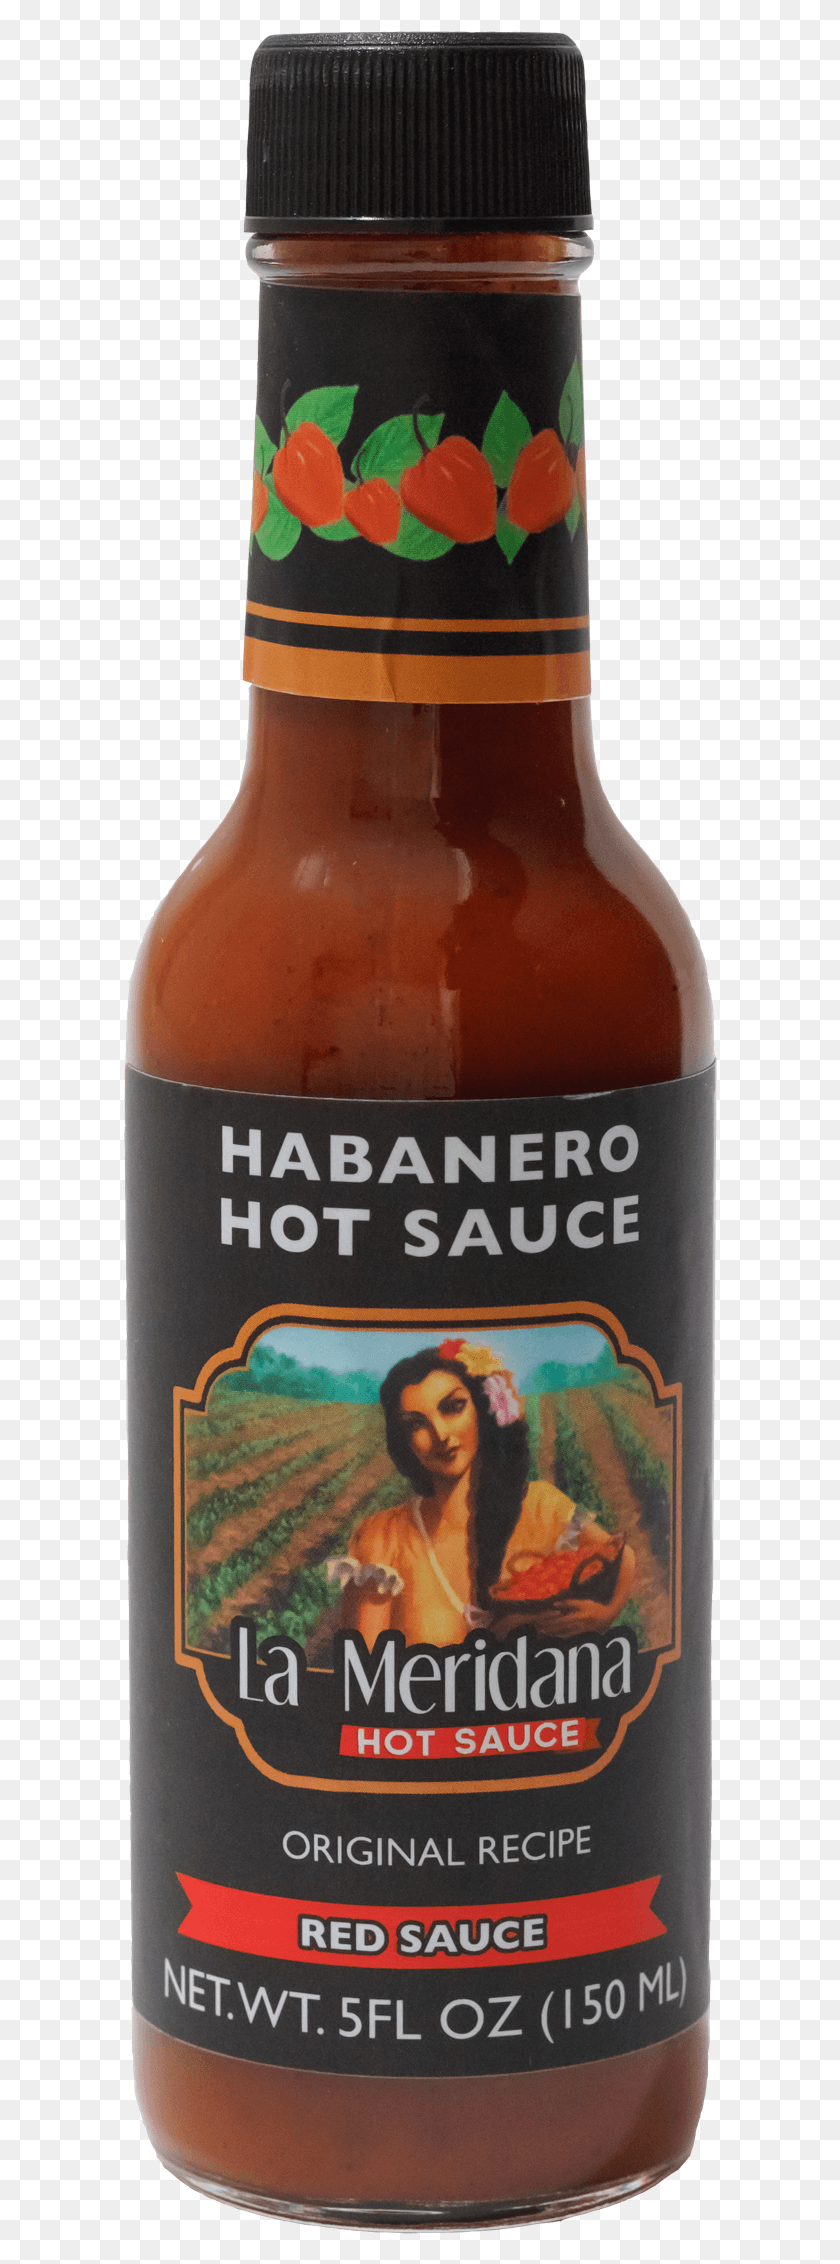 594x2204 La Meridana Habanero Hot Sauce Beer Bottle, Beer, Alcohol, Beverage HD PNG Download